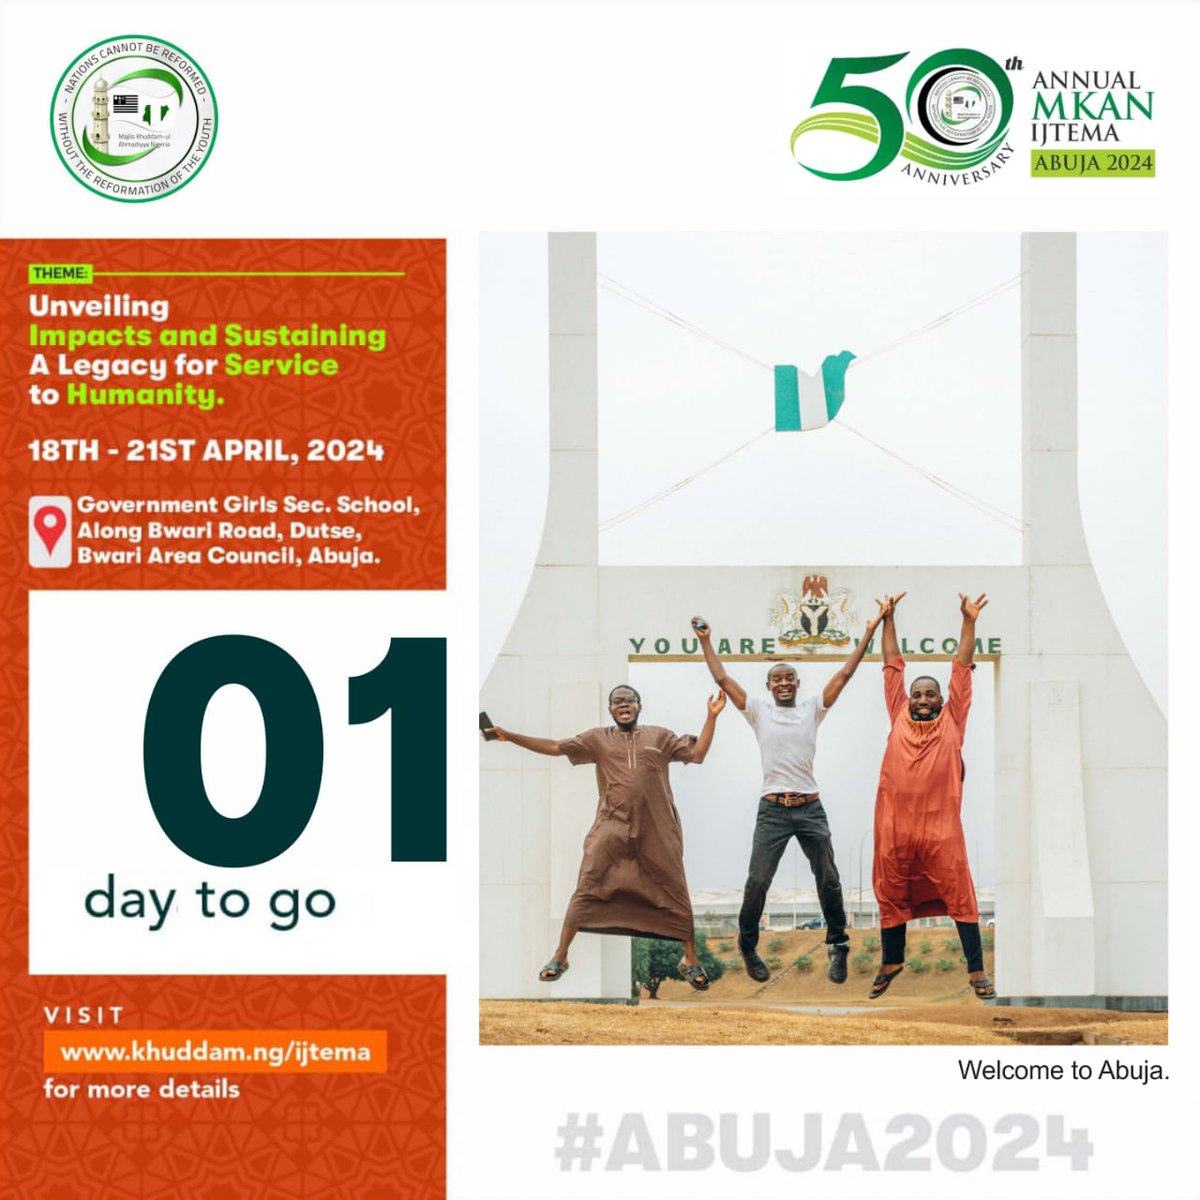 #Abuja2024 - 1 Day To Go

#MKANIjtema #MKANIjtemaat50 #AhmadiYouth #Ahmadiyya #MKAN